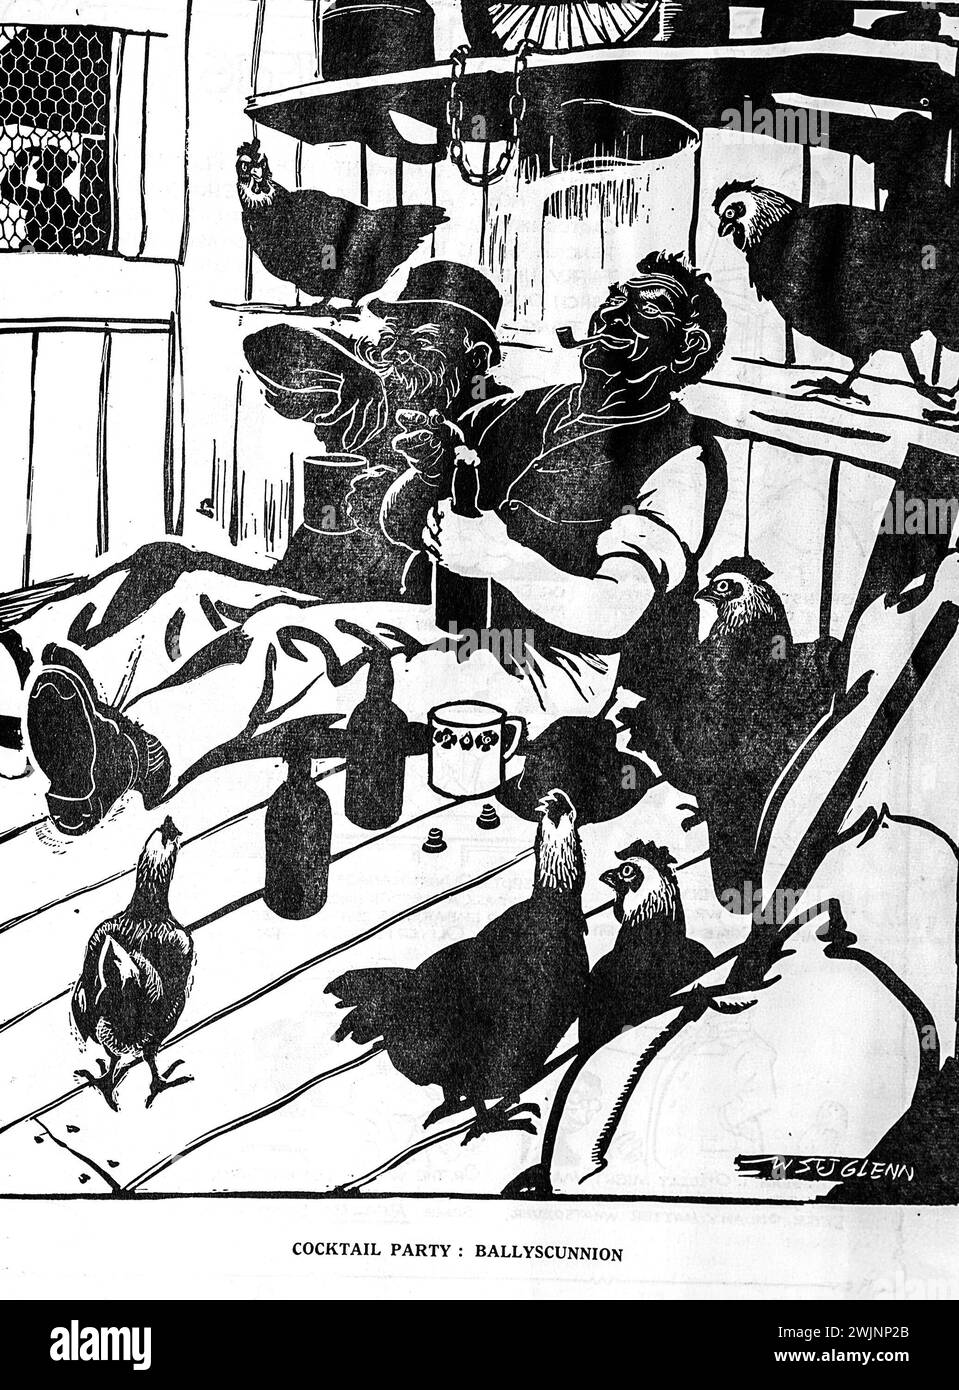 Un cartone animato del Dublin Opinion Magazine intitolato cocktail Party: Ballyscunnion, che mostra due uomini in un pollaio che si godono bottiglie di stout mentre le galline vagano intorno a loro. Ballyscunnion era un villaggio immaginario in Irlanda e le vicende su lì erano una caratteristica regolare della rivista. Foto Stock